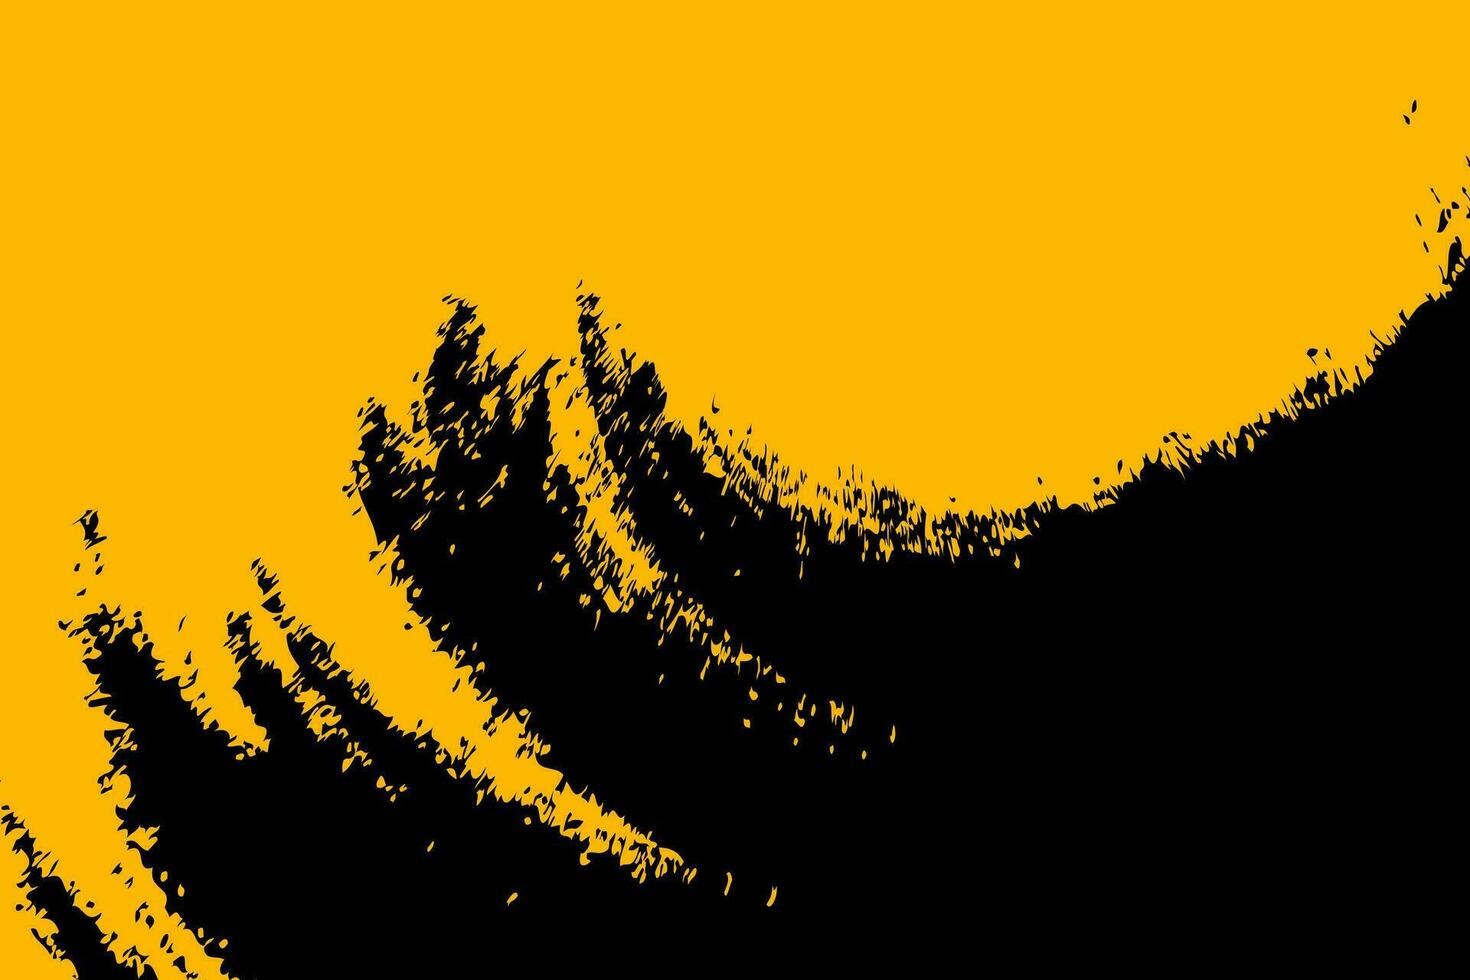 zwart geel plons grunge structuur effect achtergrond. verontrust ruw bedekking abstract grunge textuur. vector illustratie